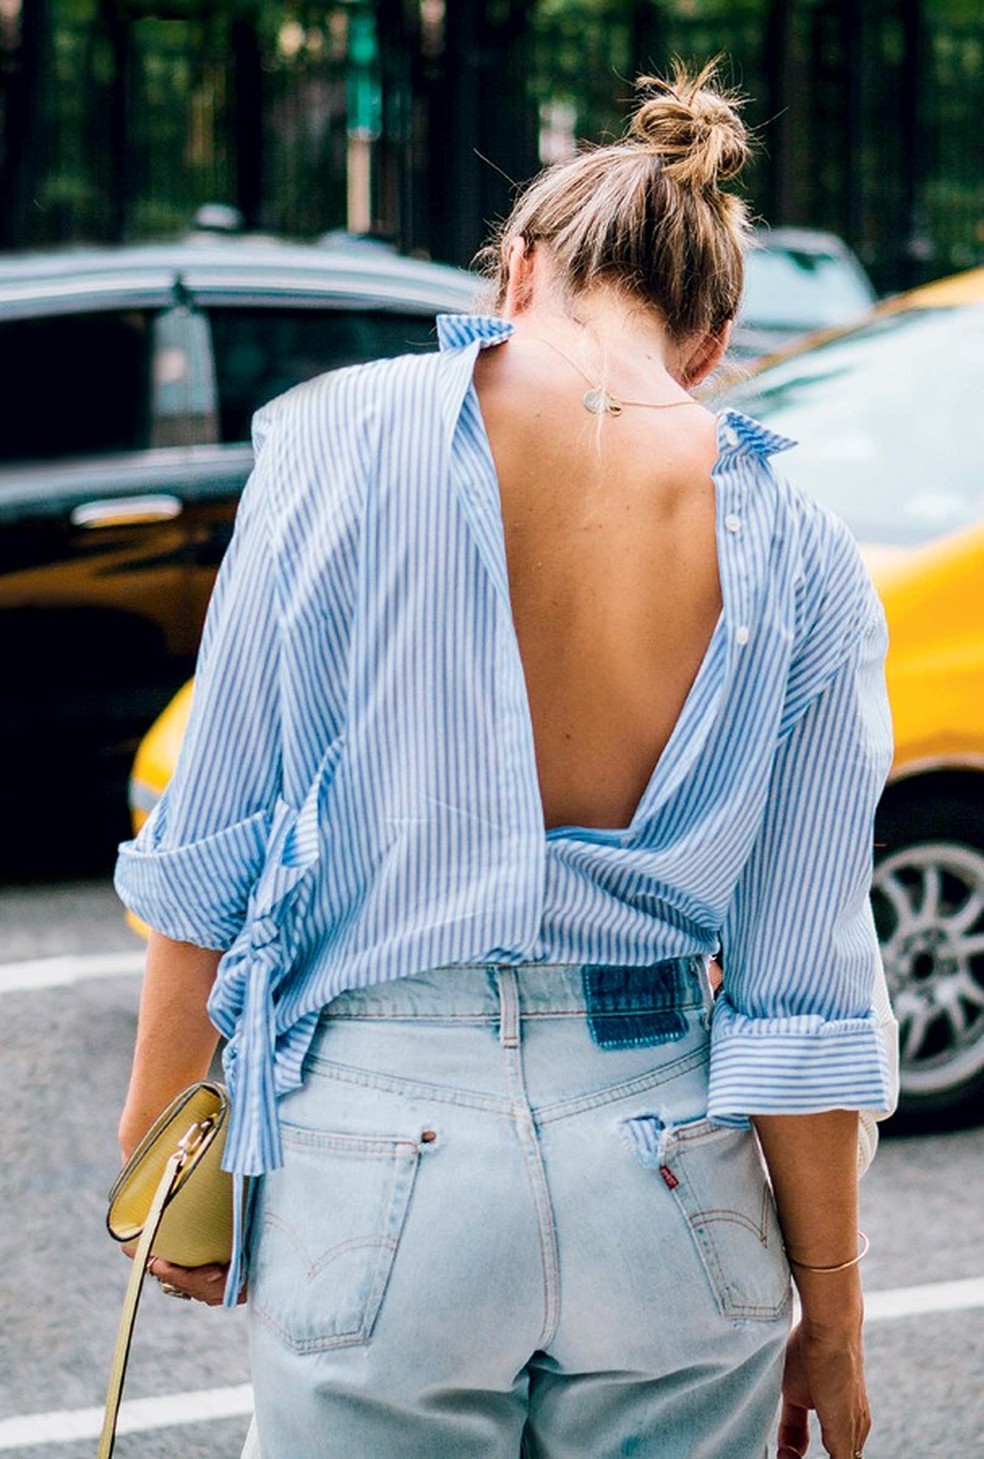 Camisa ao contrário: tendência nas semanas de moda ganha as ruas